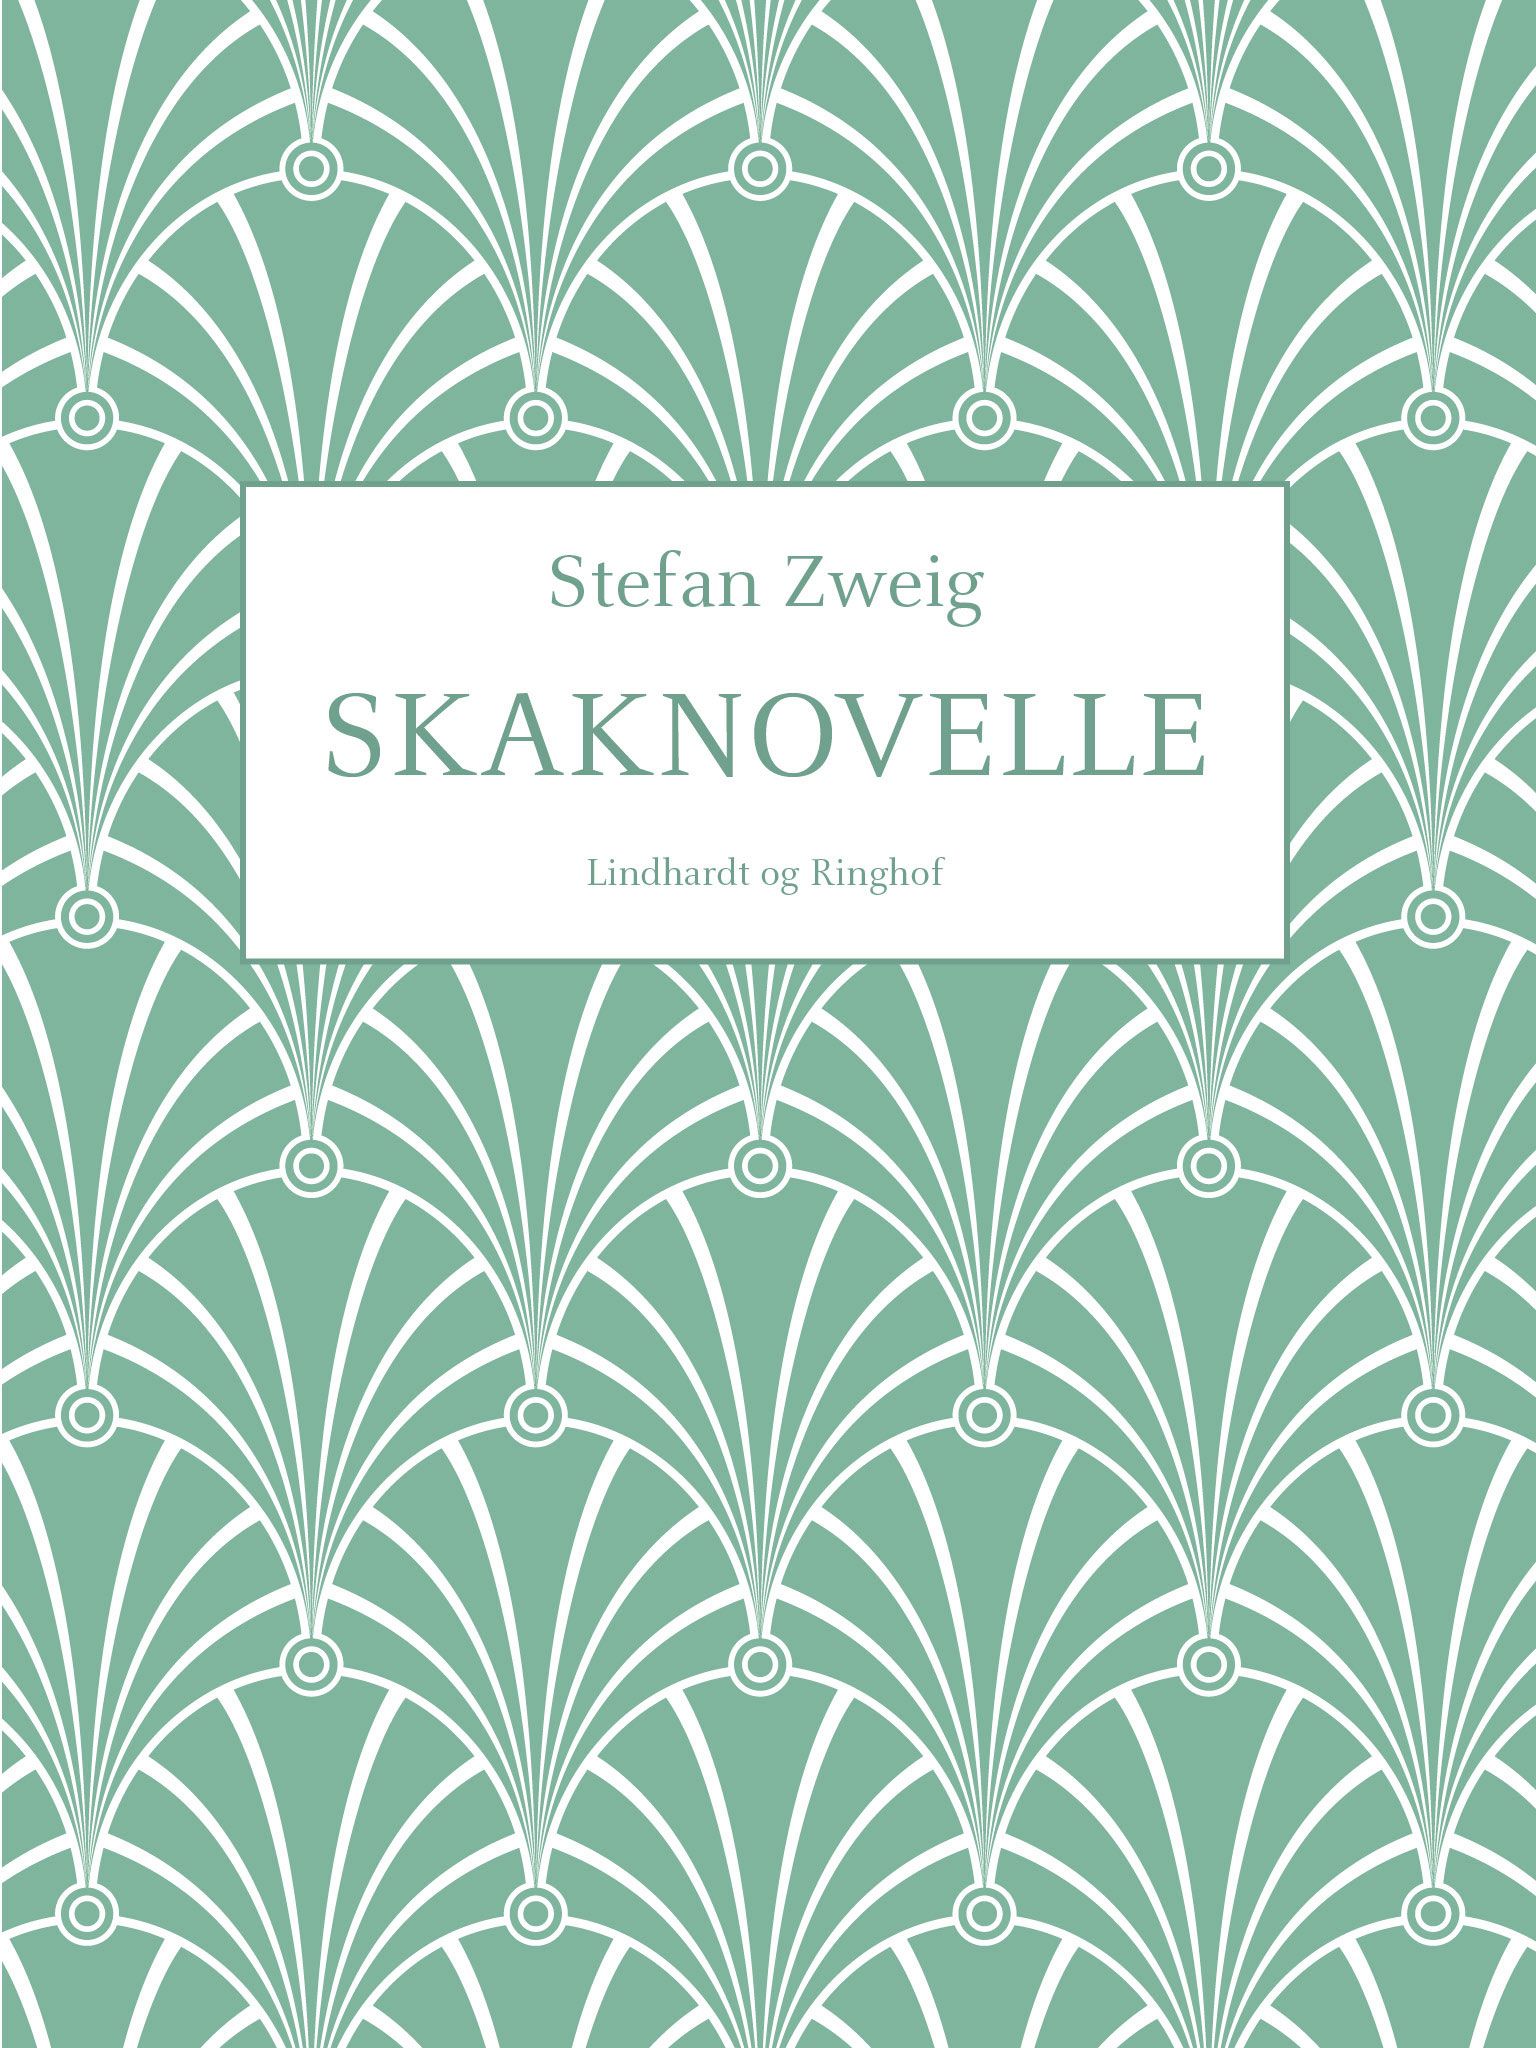 Skaknovelle, ljudbok av Stefan Zweig